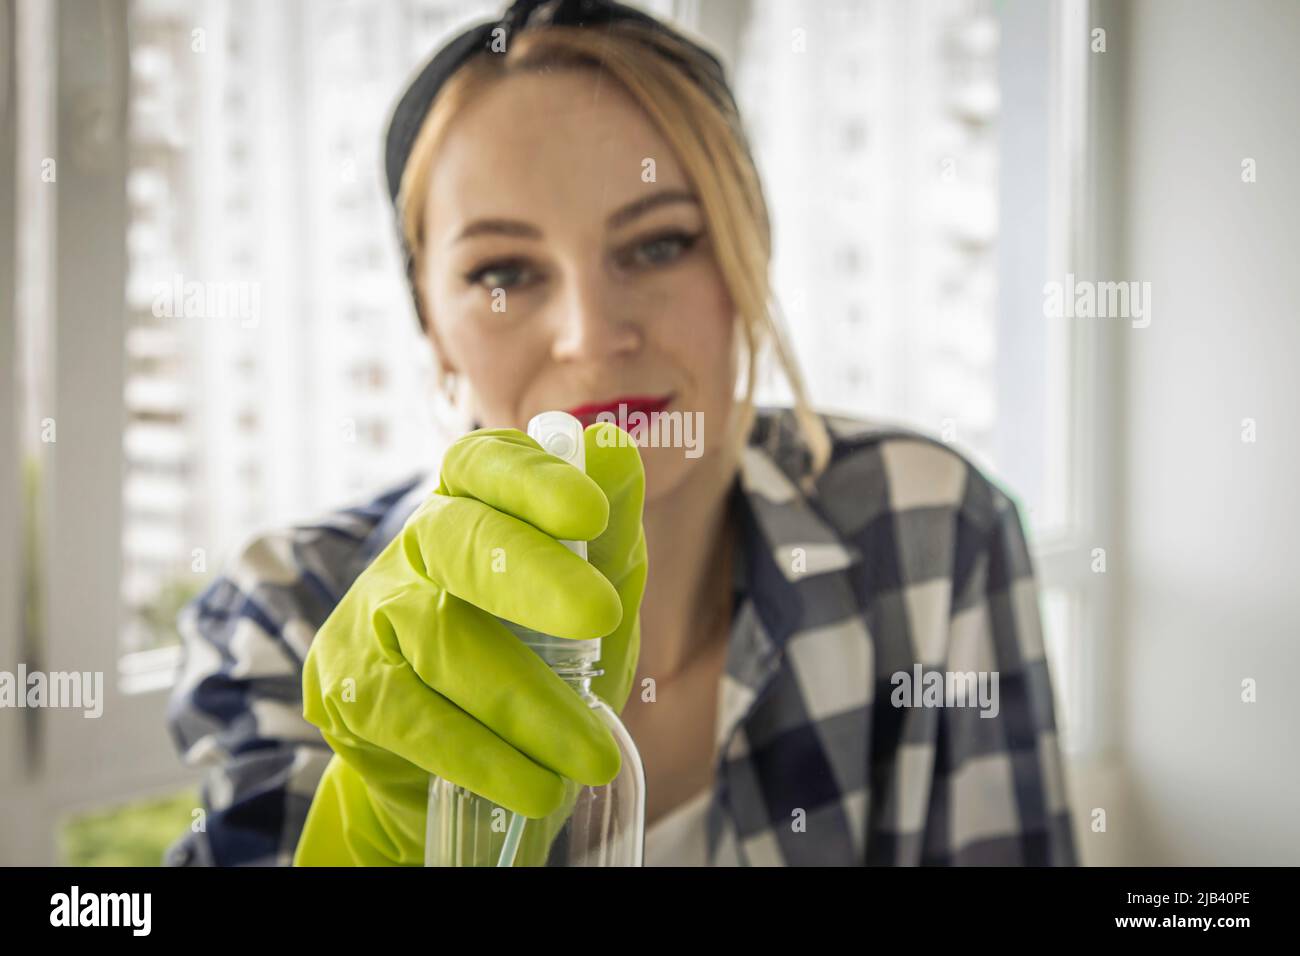 Pretty woman sprays window cleaner on glass. Stock Photo